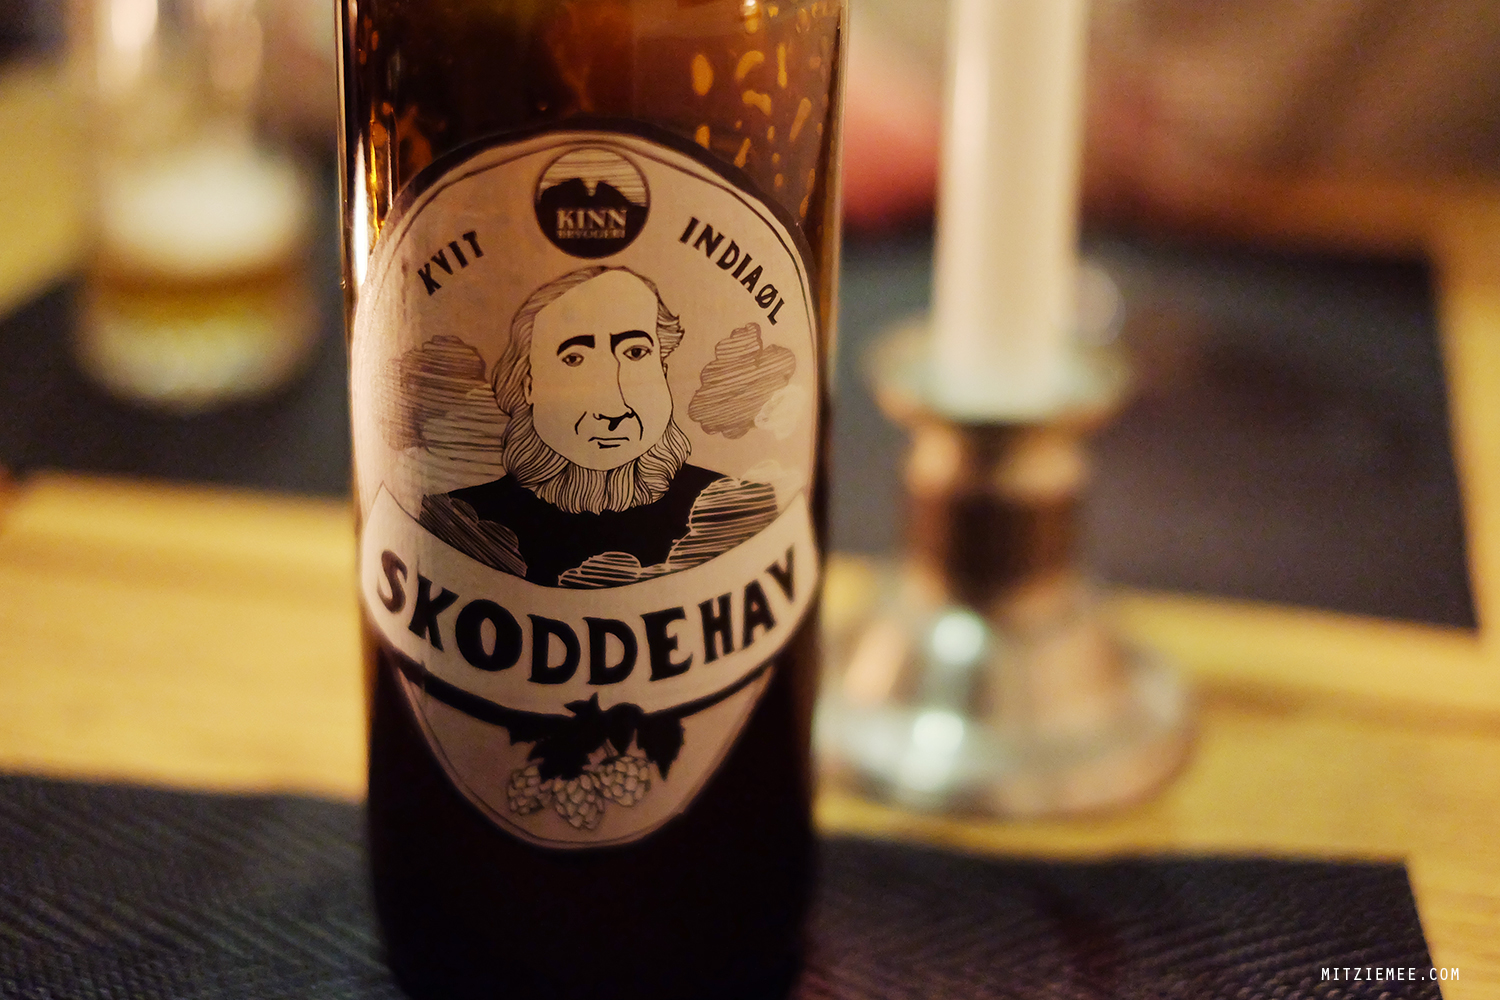 Skoddehav, Norwegian beer